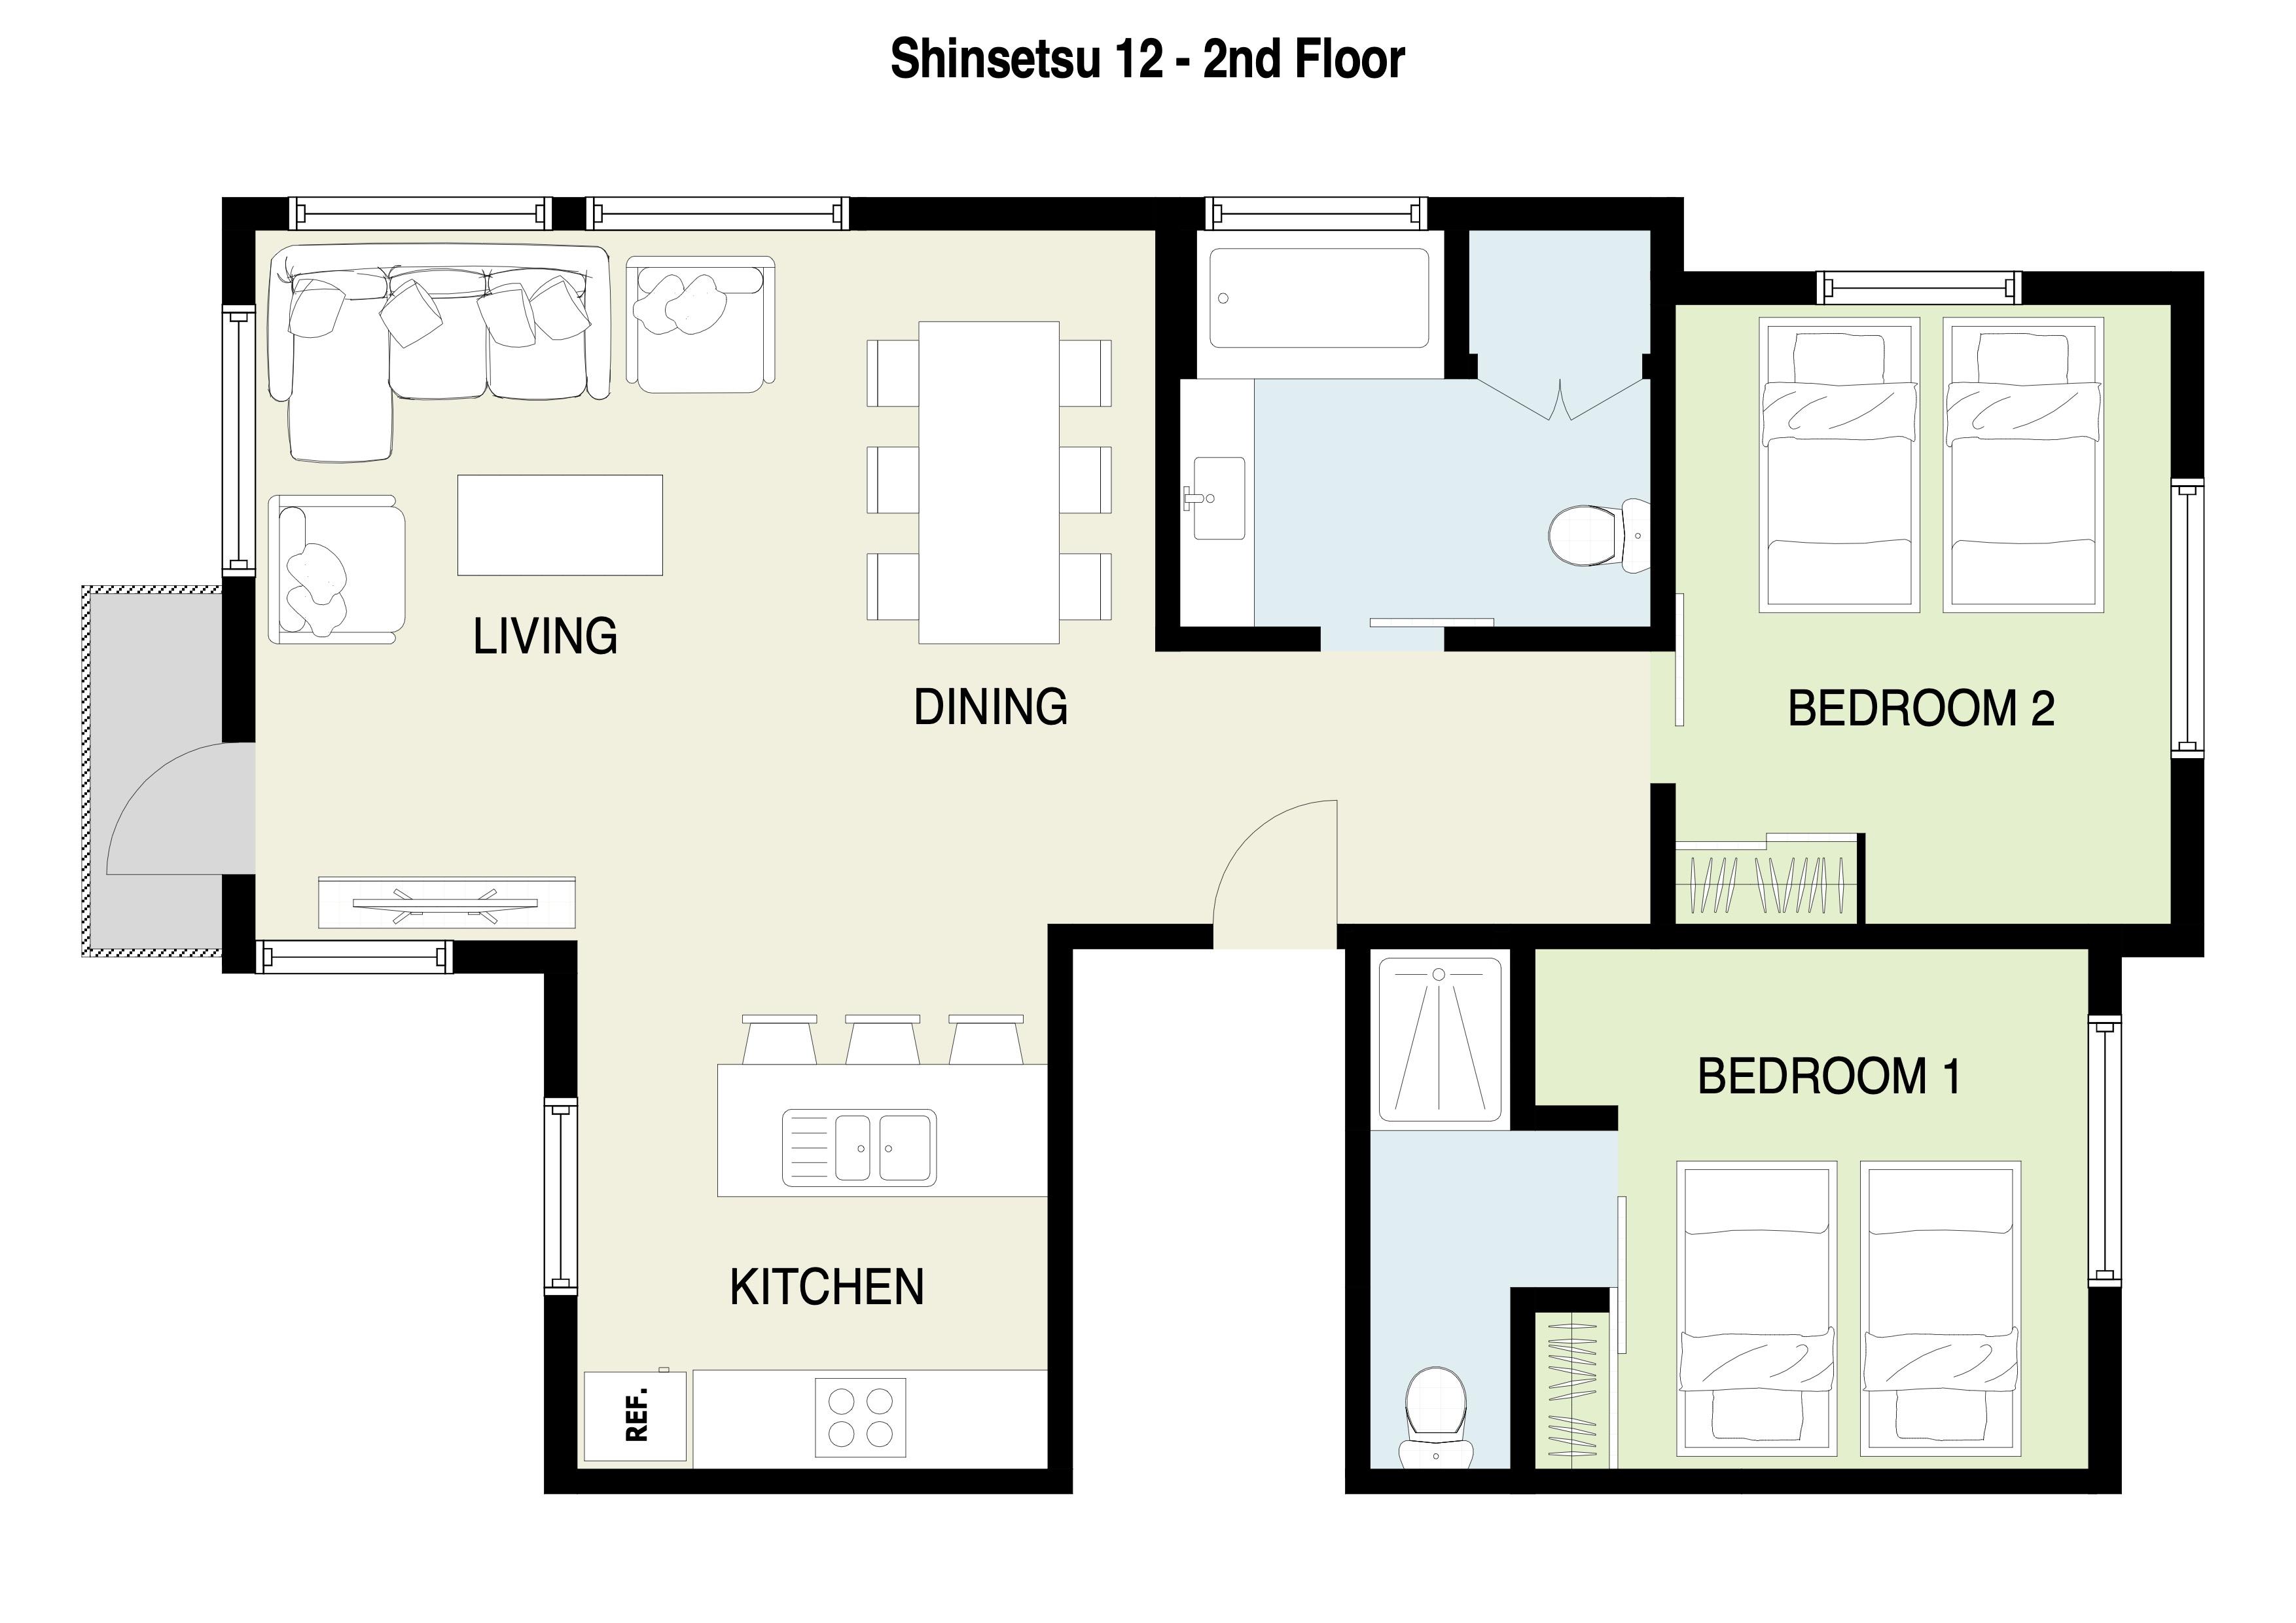 Shinsetsu Apartments 12 floor plan